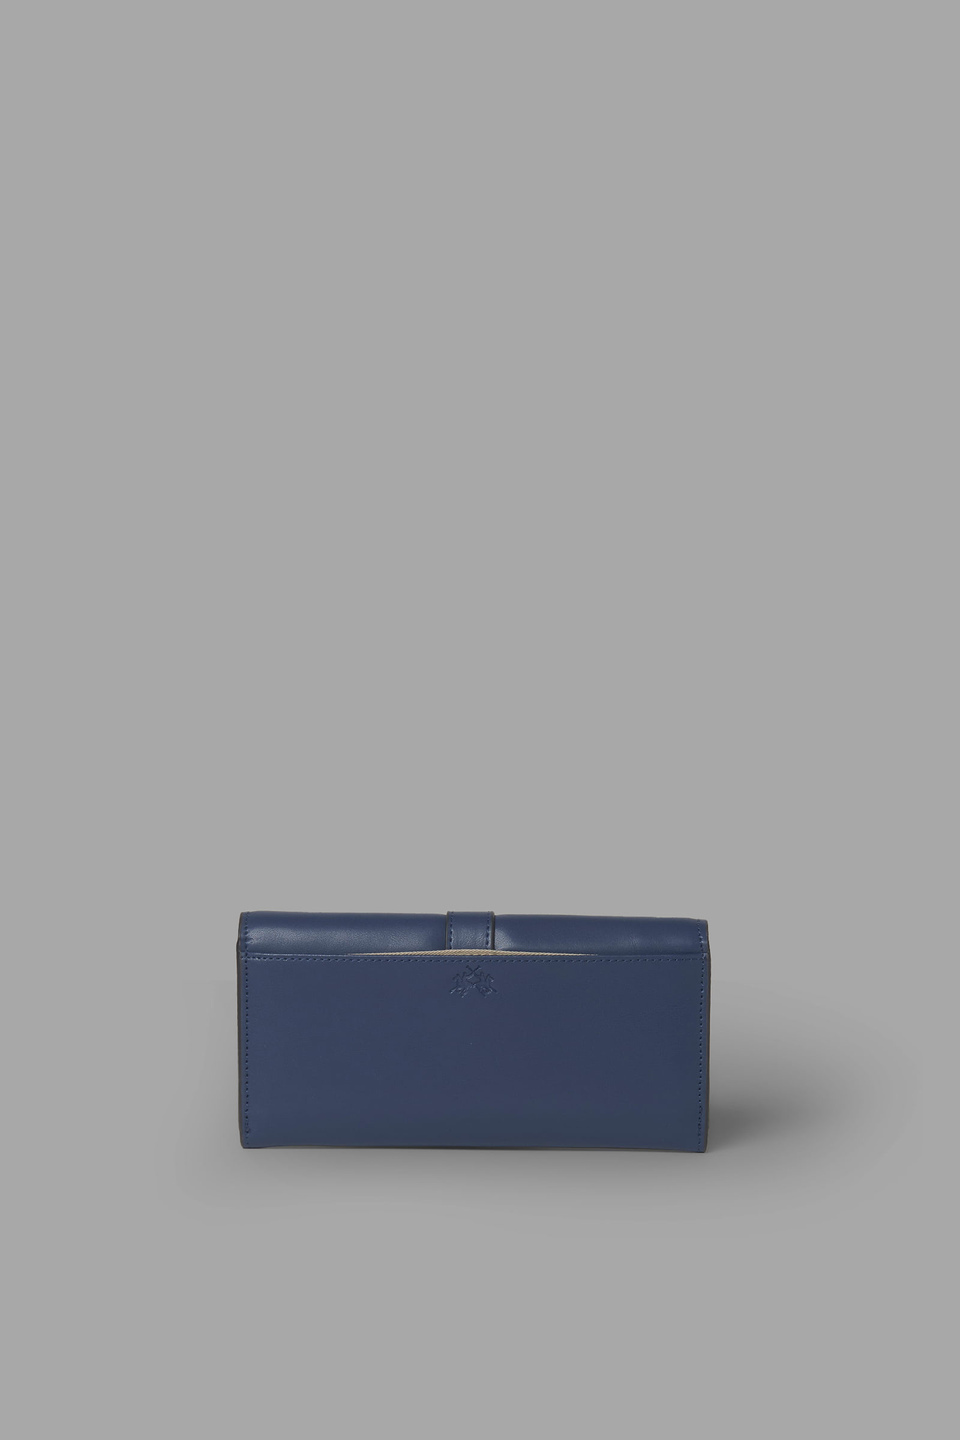 Buckle-embellished leather purse - La Martina - Official Online Shop